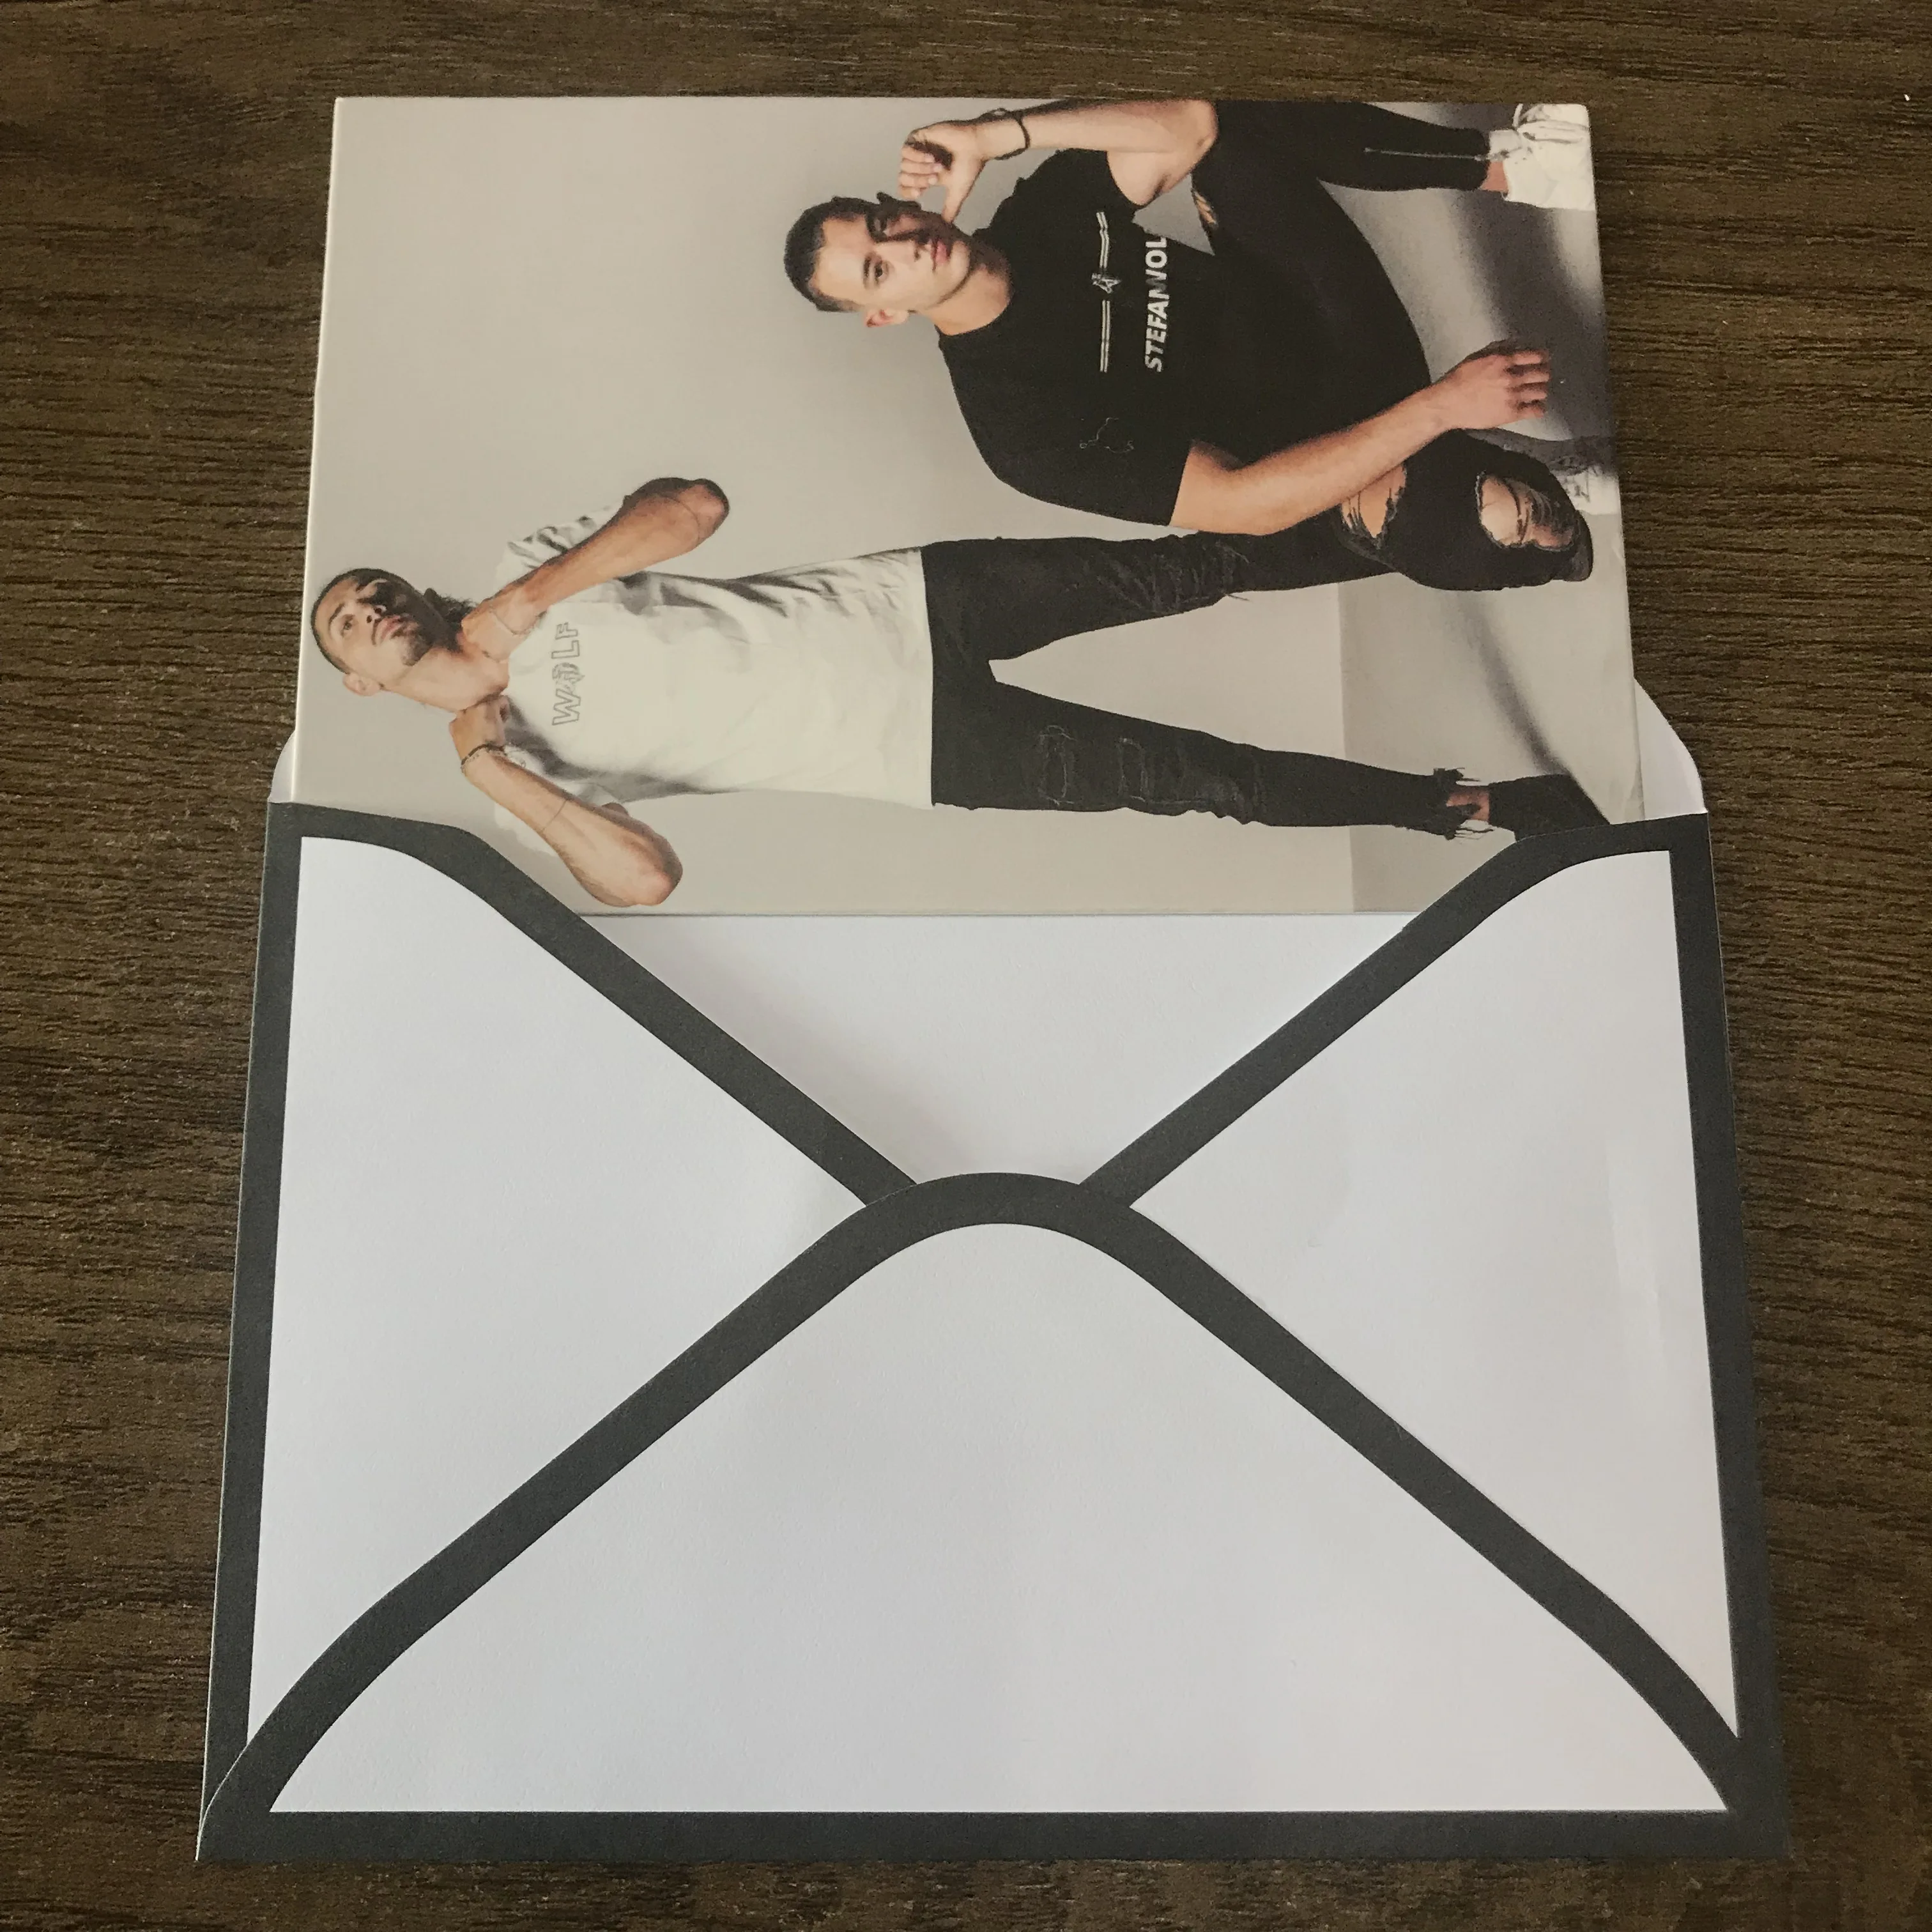 Custom printing luxury cardboard gift  pearl paper envelope for business Brand packaging envelope